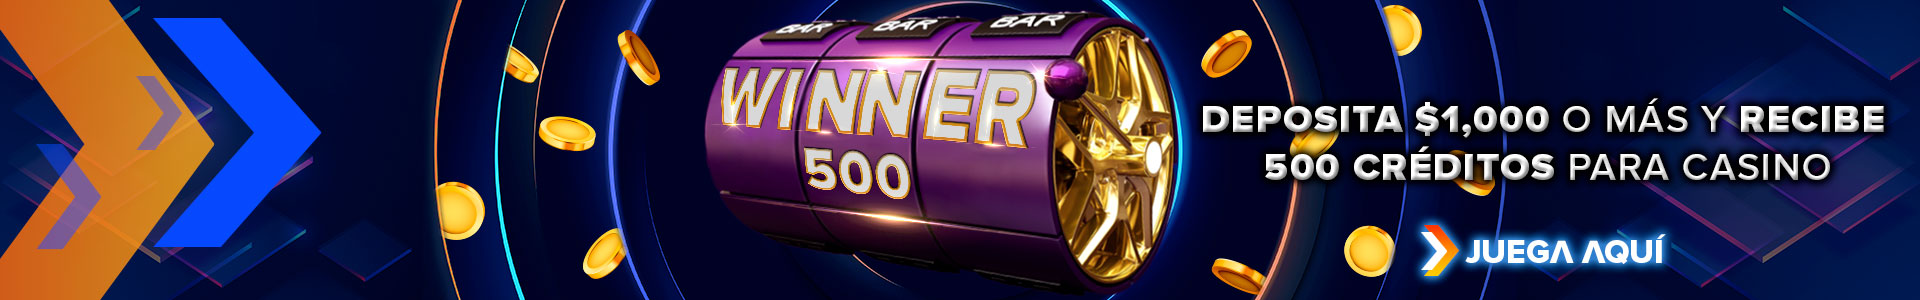 Winner 500